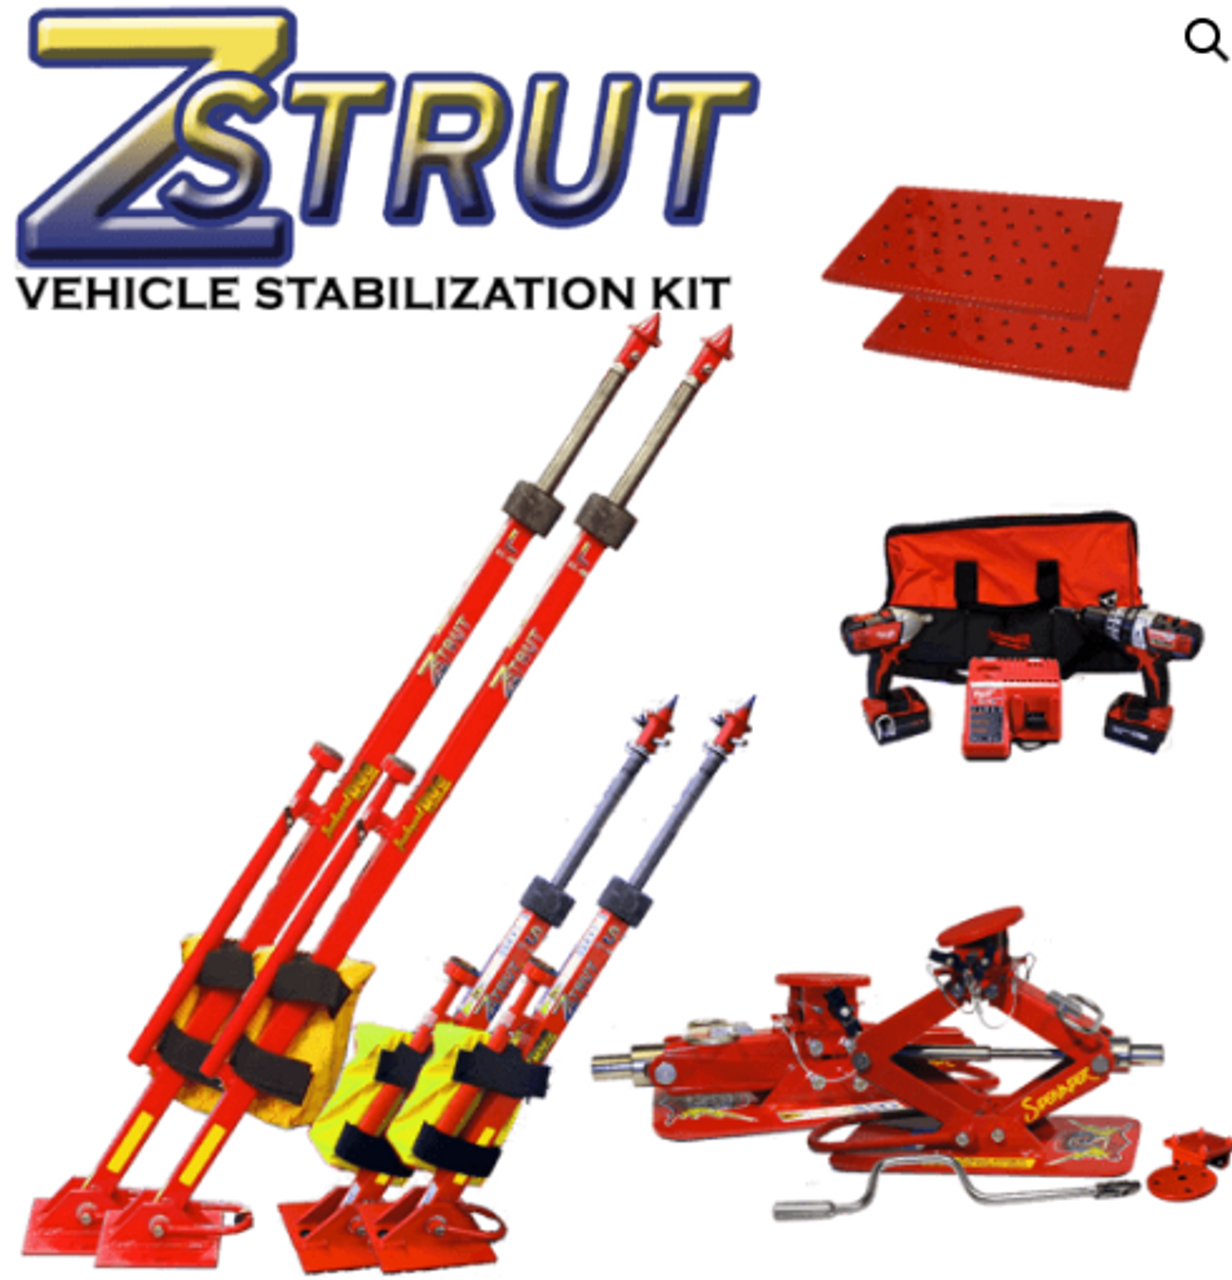 ZSTRUT Vehicle Stabilizing Kit